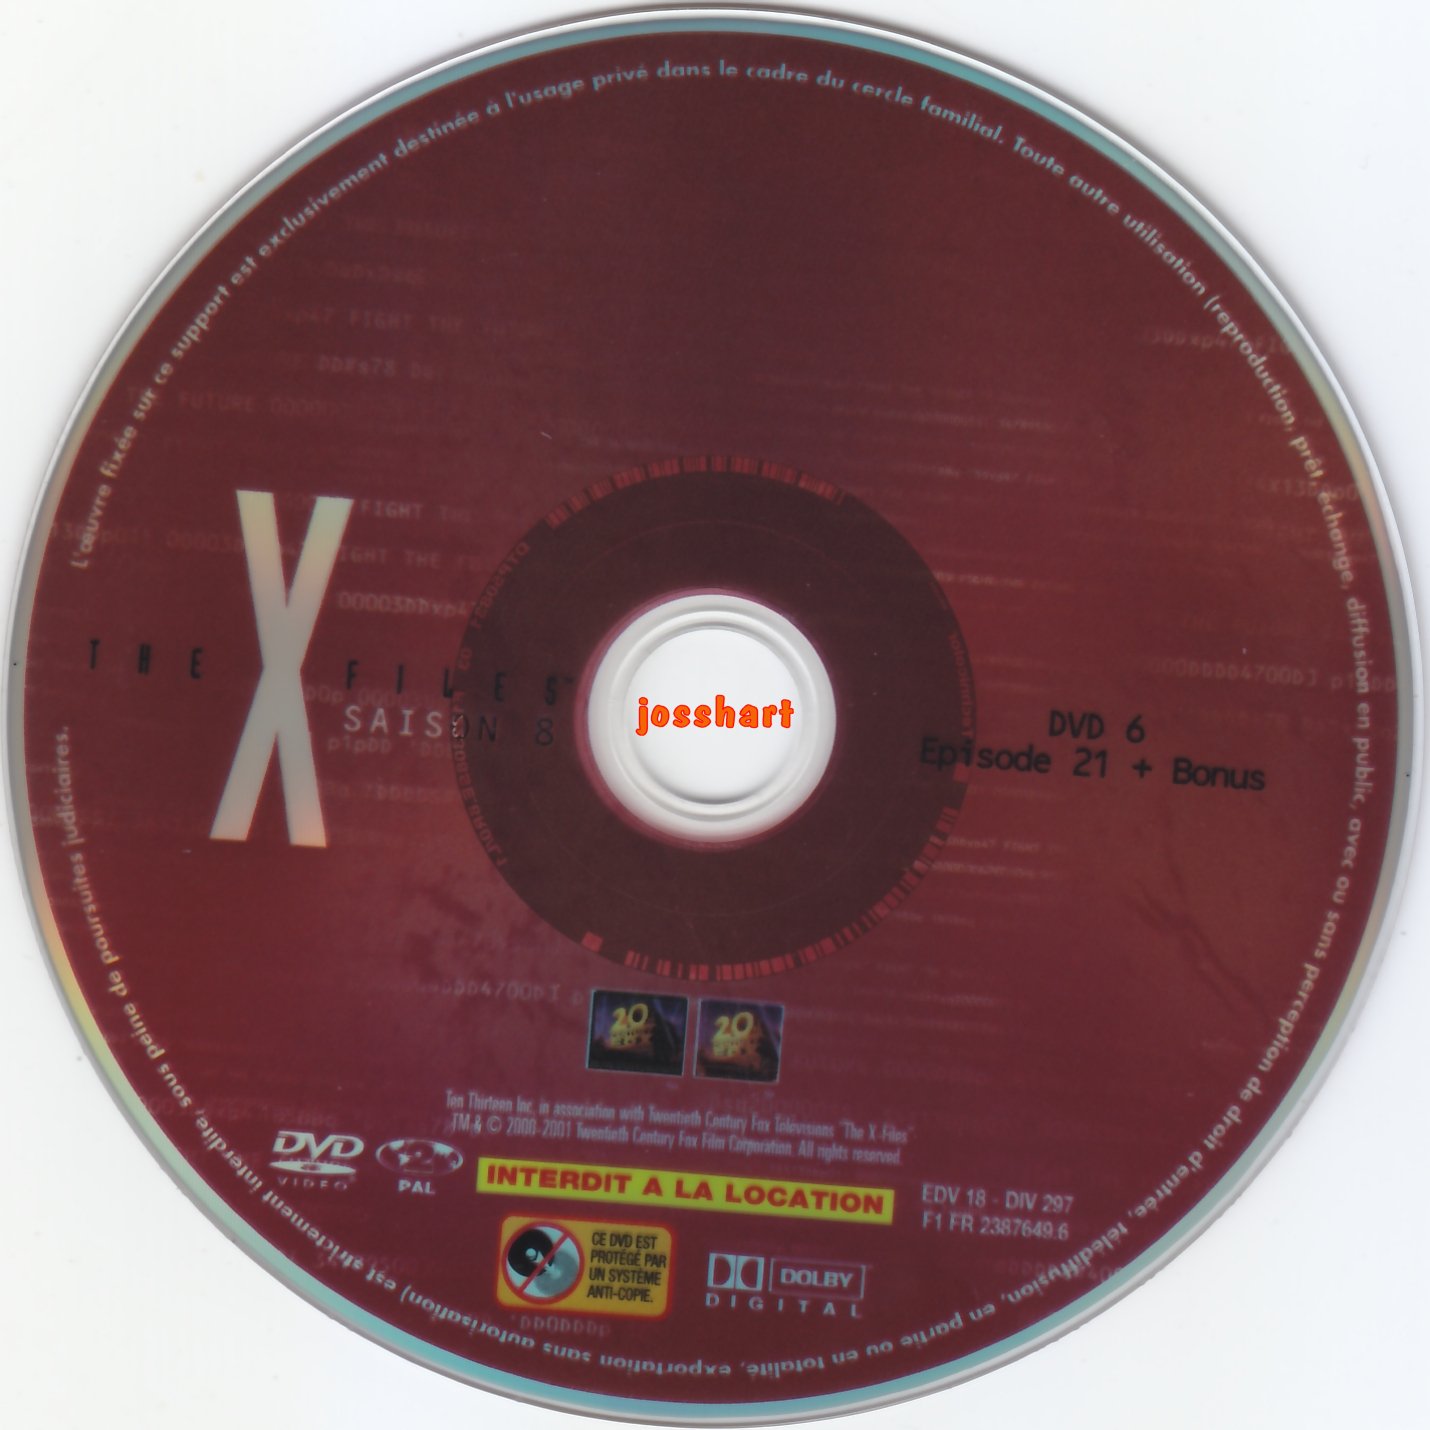 The X Files Saison 8 DVD 6 v2